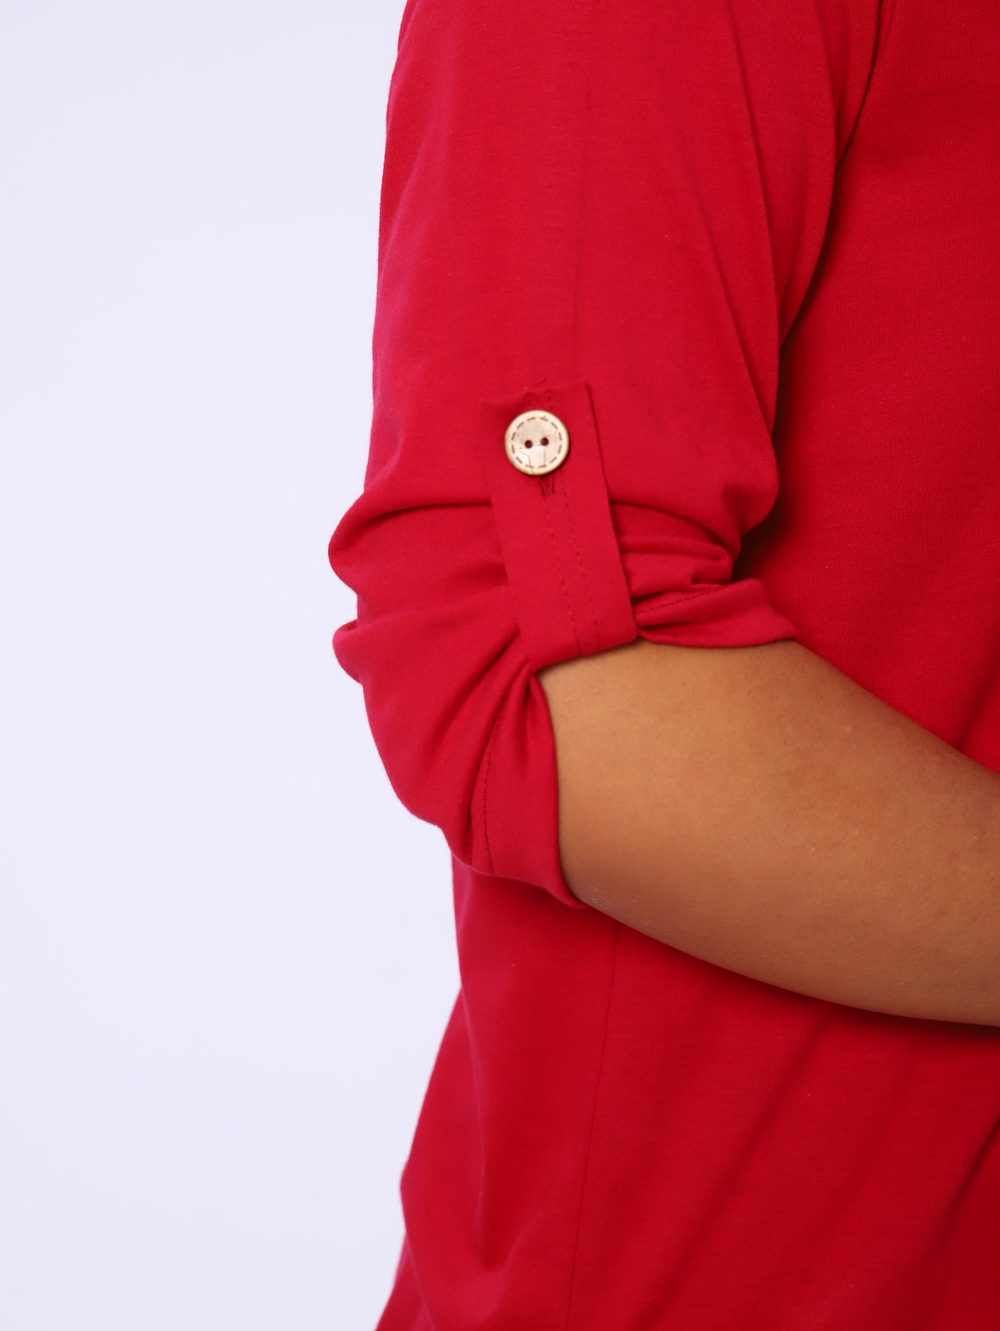 Рубашка женская 109 одн.бордовый